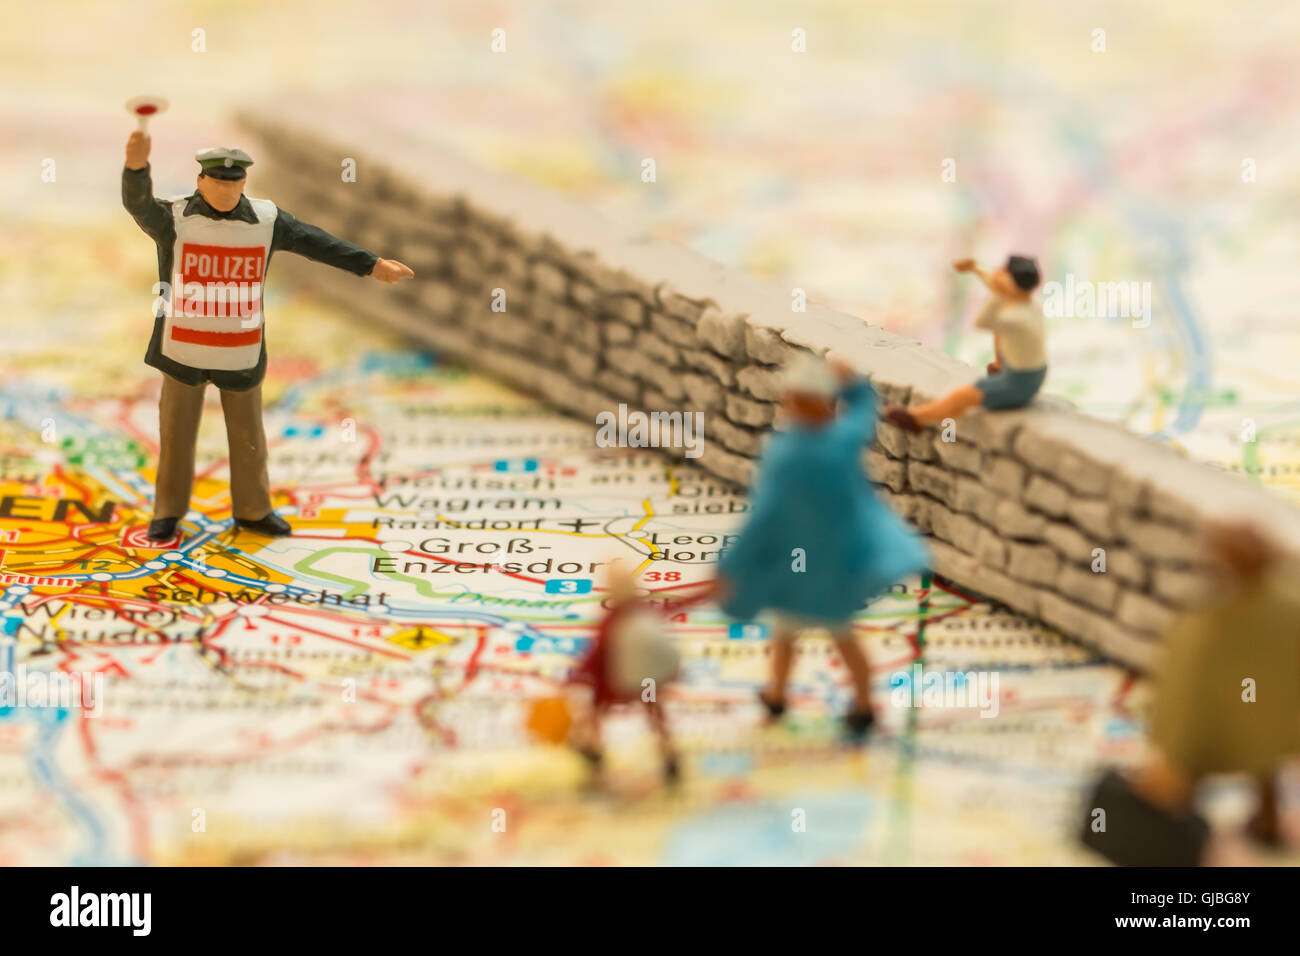 Persone in miniatura su una mappa che suggerisce la crisi dei rifugiati in Europa Foto Stock